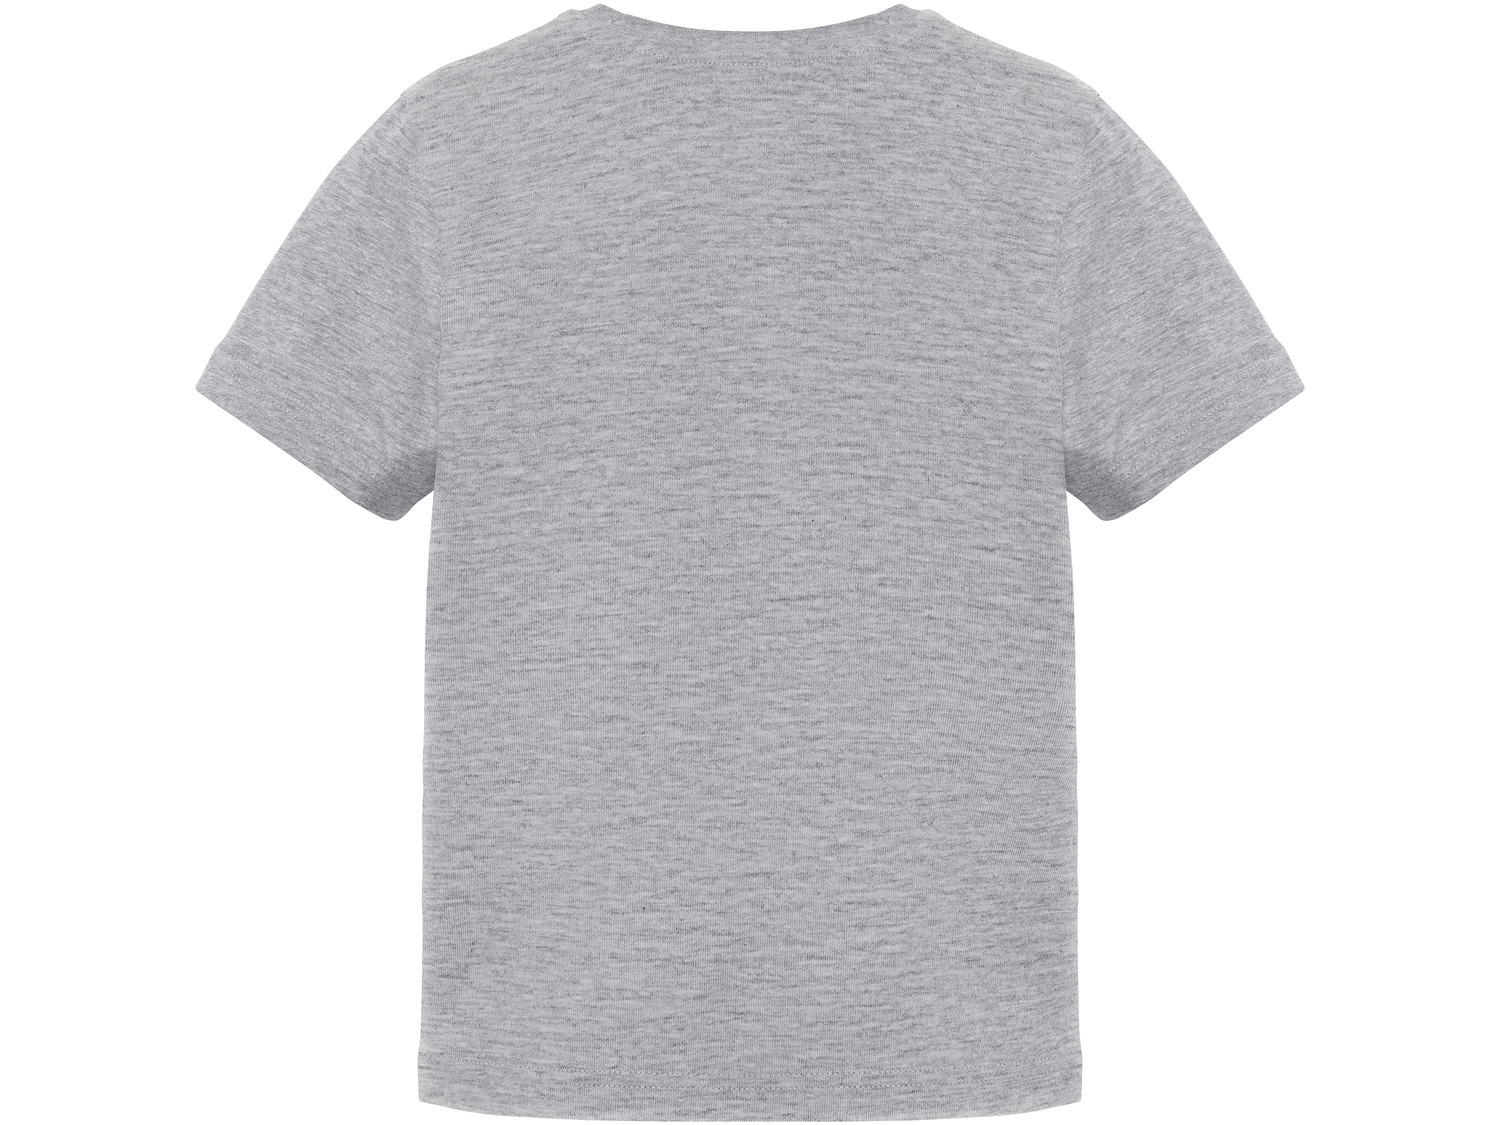 T-shirt chłopięcy Pepperts, cena 9,99 PLN 
- rozmiary: 122-152
- 90% bawełny, ...